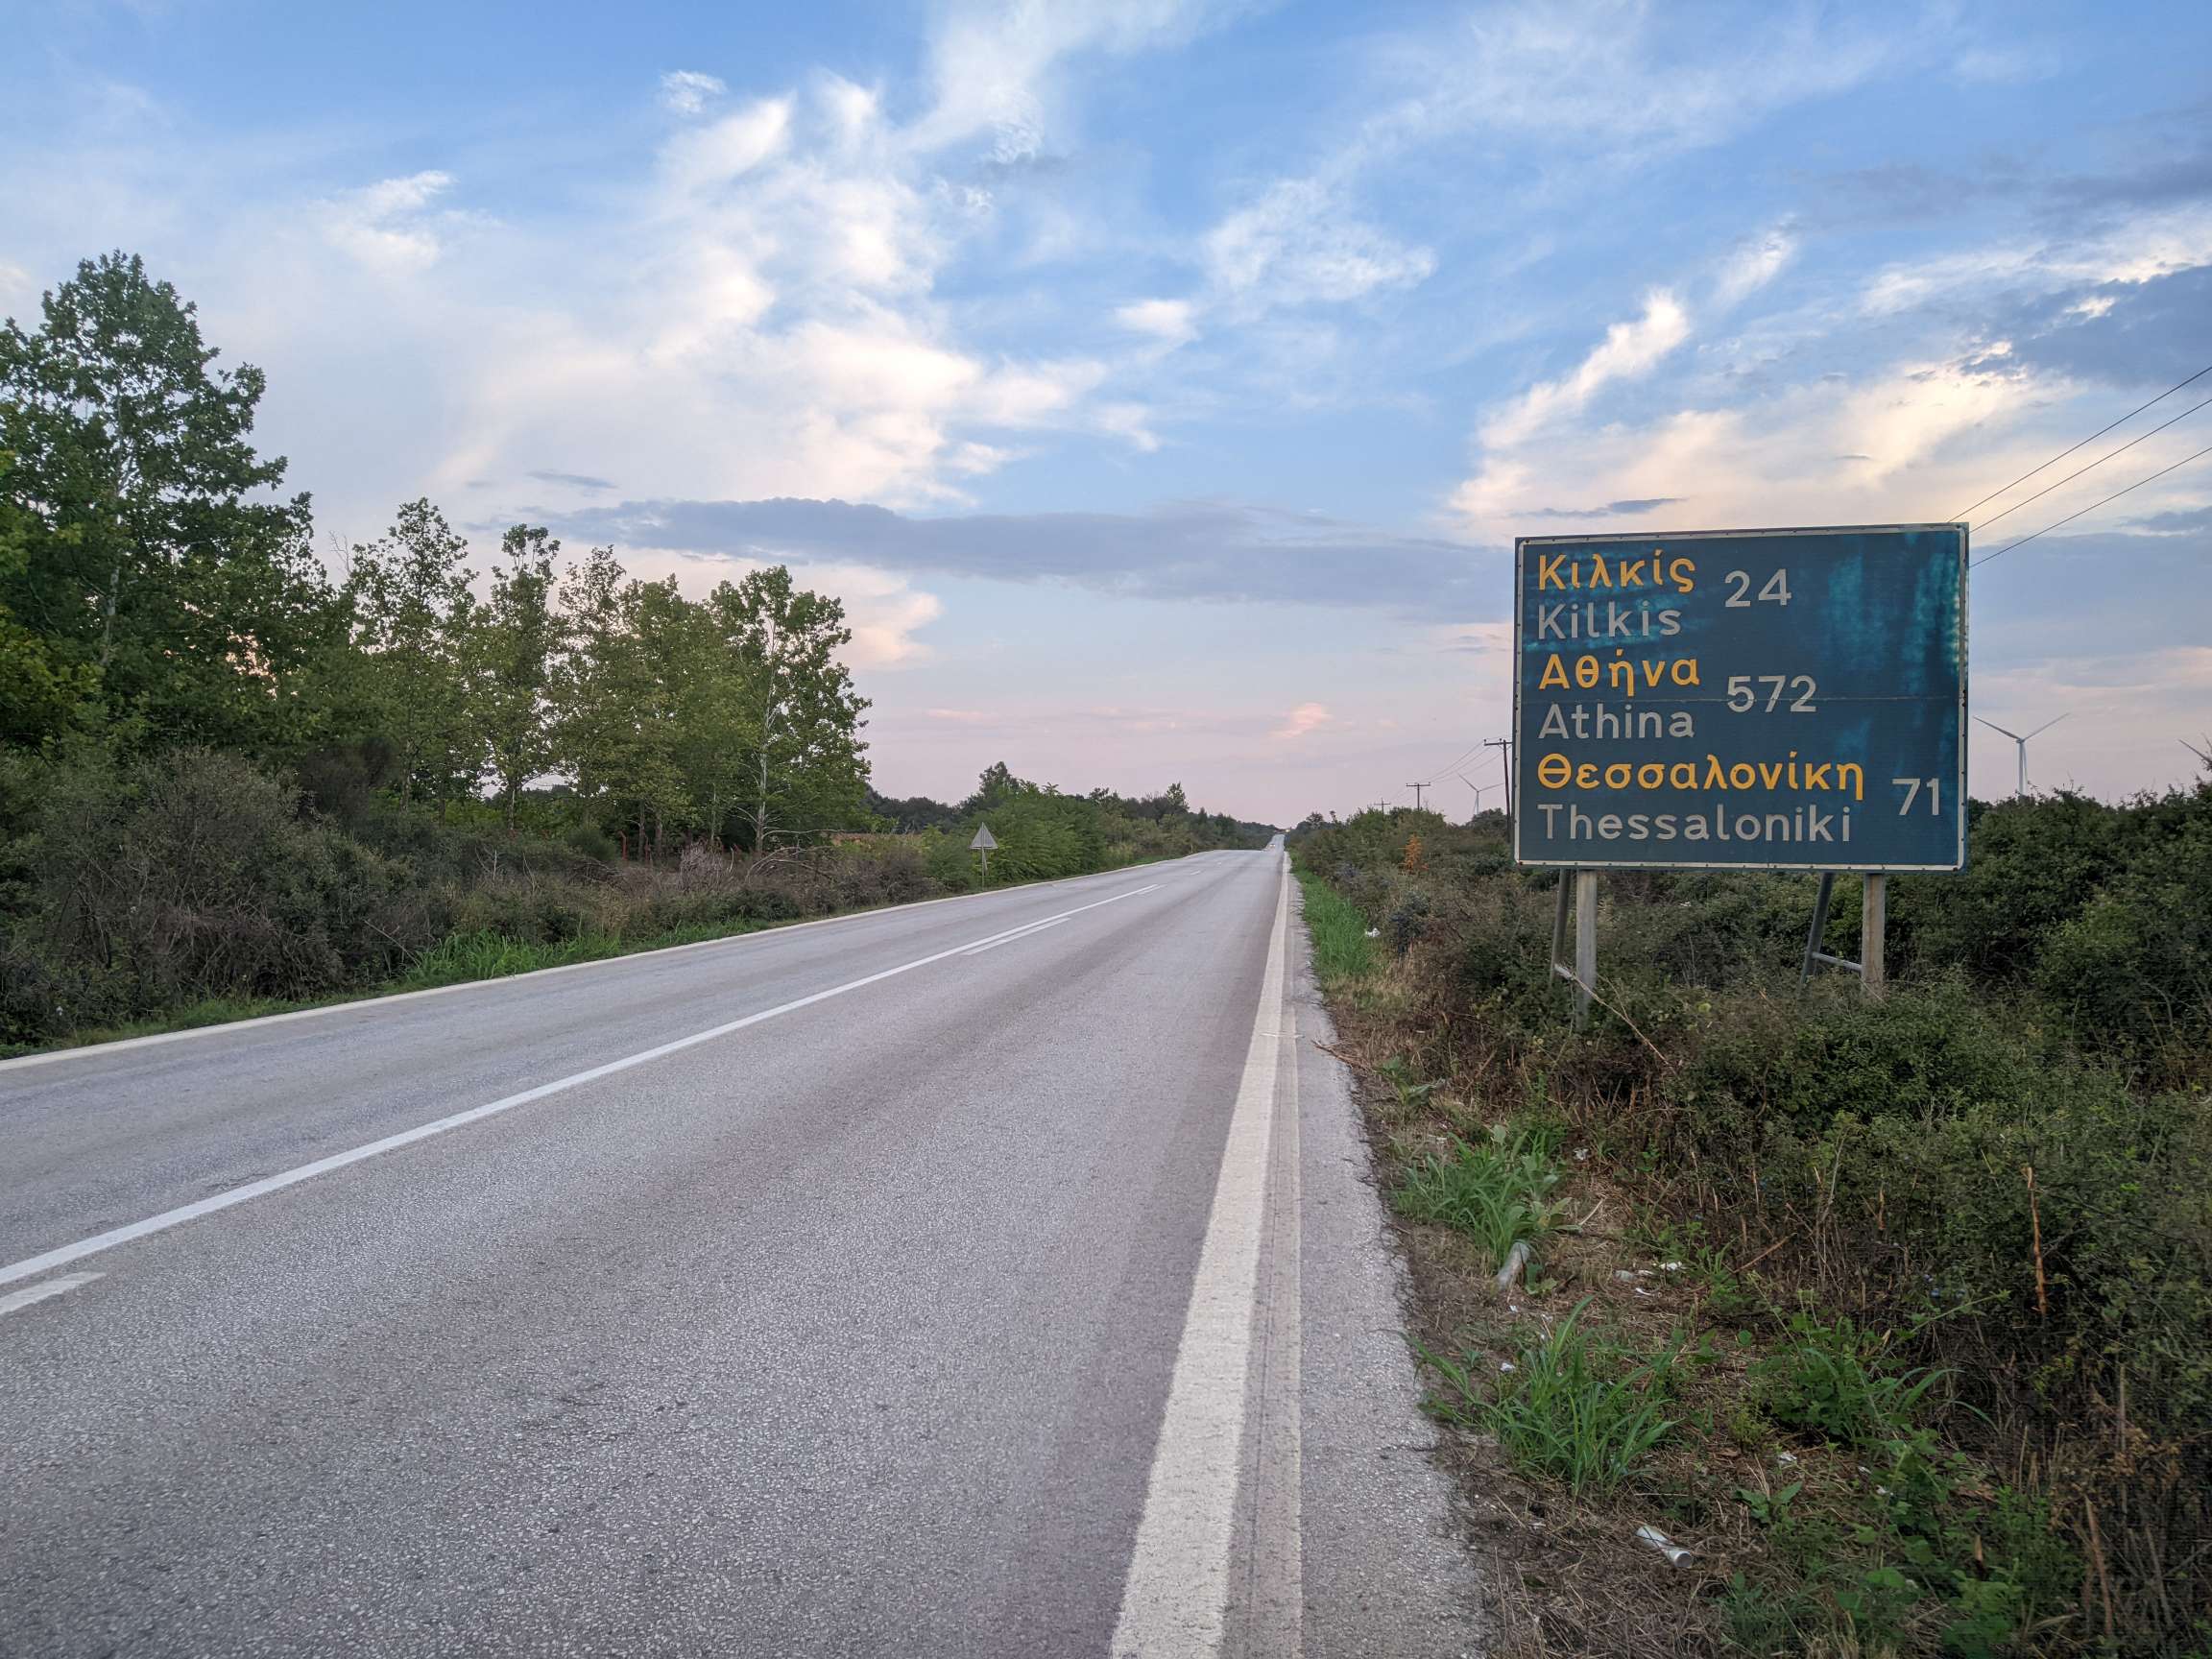 Straße in Griechenland und Schild mit griechischen und lateinischen Buchstaben und Kilometerangaben